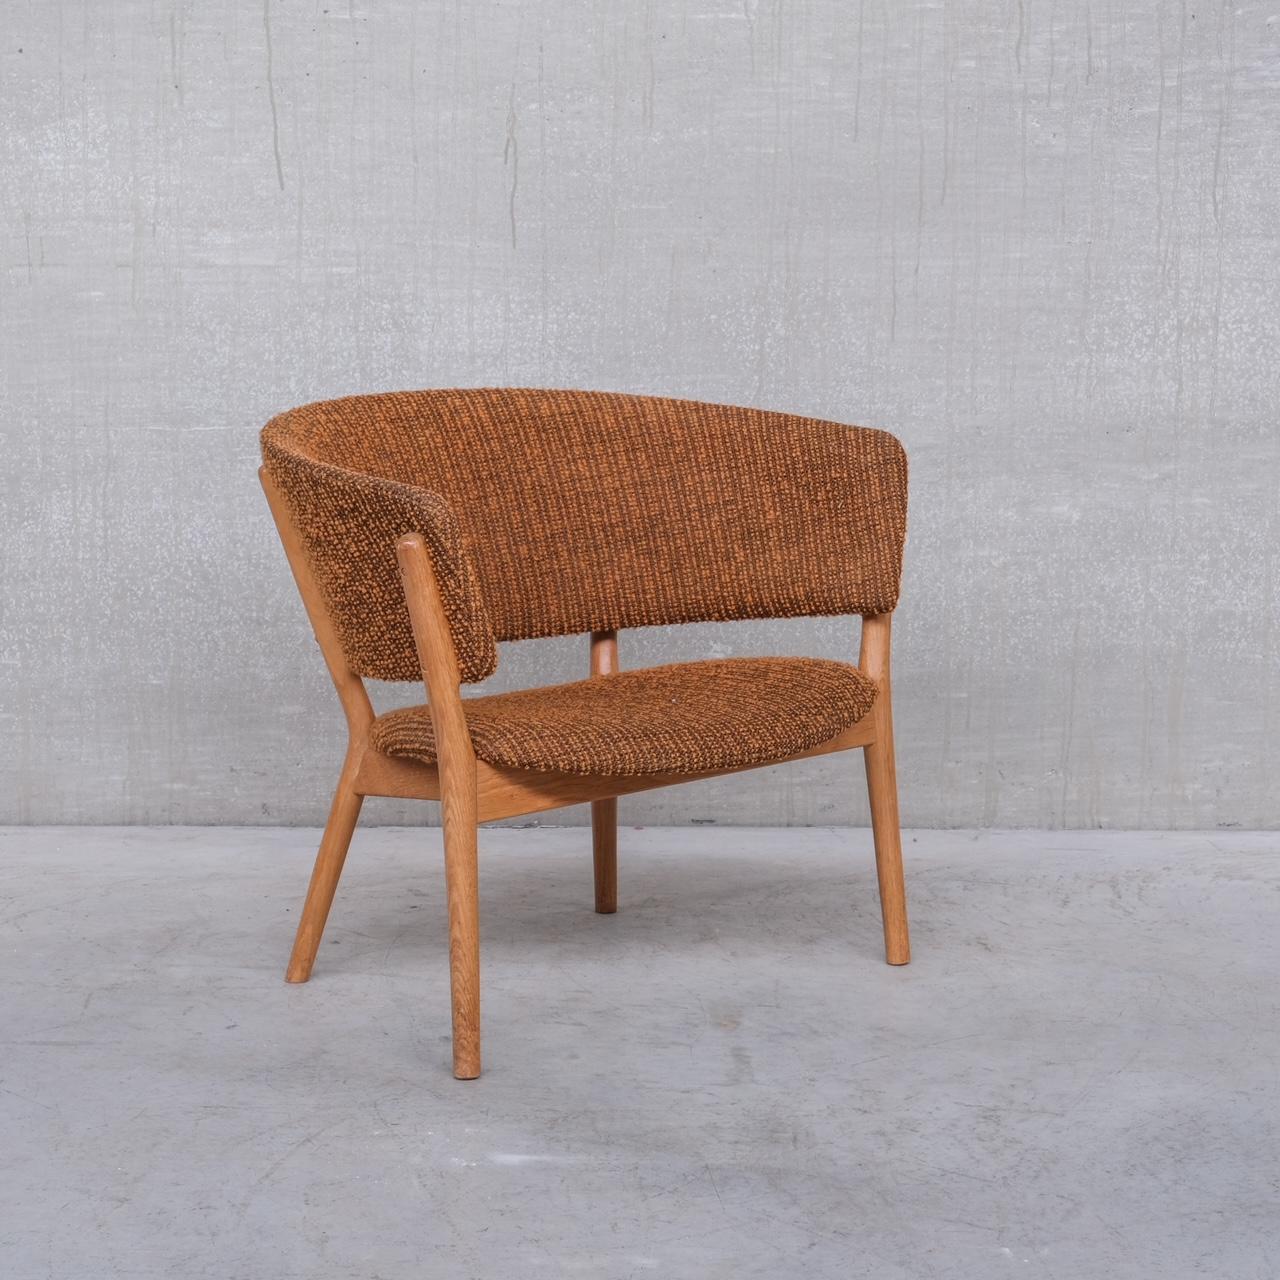 Fauteuils au style sauvage de Nanna Ditzel. 

Modèle ND83. 

Conçu par Ditzel en 1952, fabriqué par Søren Willadsen, Danemark

Danemark, années 1950. 

Une chaise longue très ouverte, très confortable et un classique du design.

Le tissu